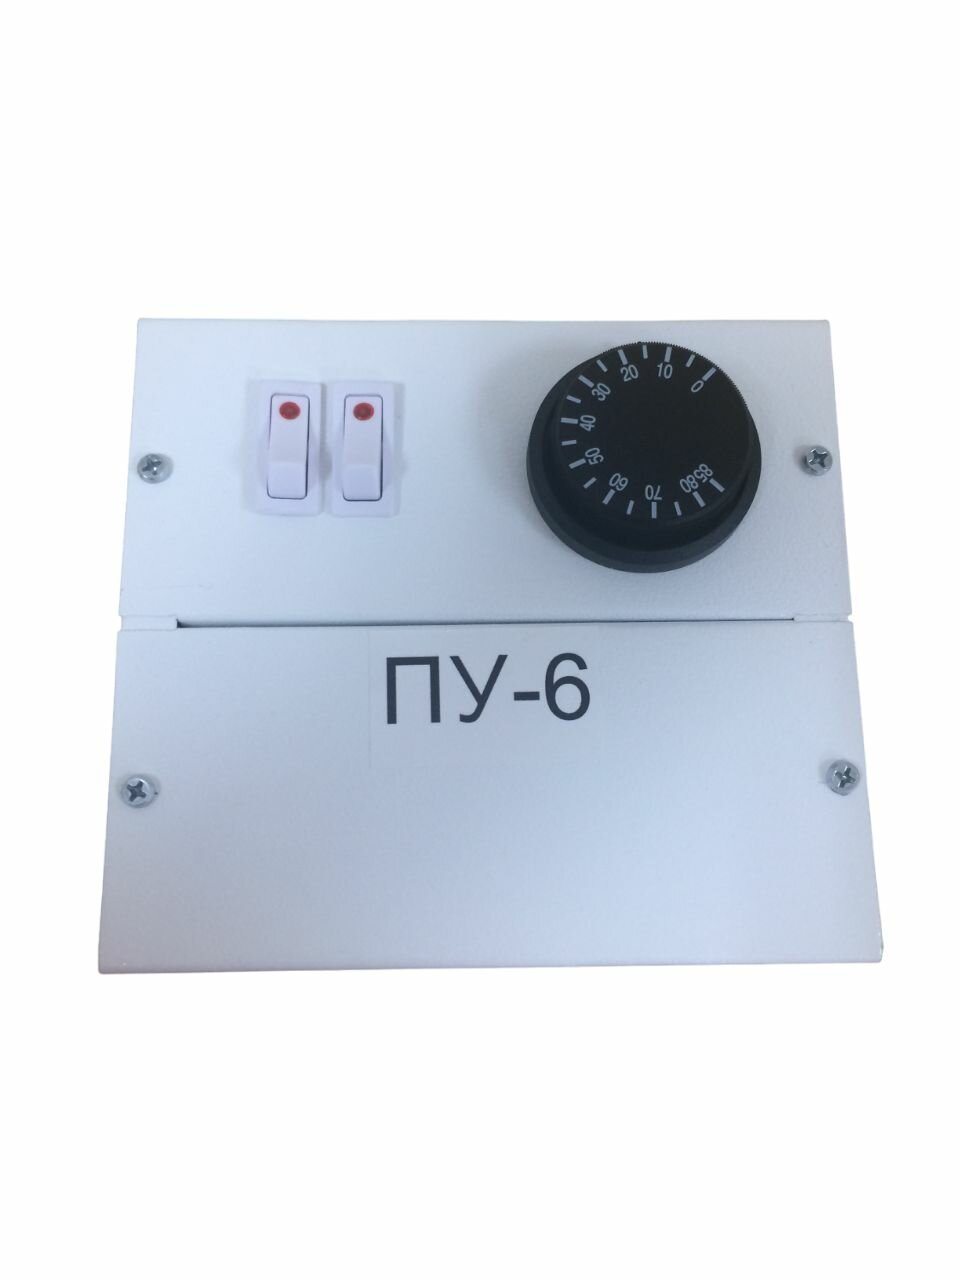 Пульт управления электронагревателями, блок для электрокотлов ПУ-6 220